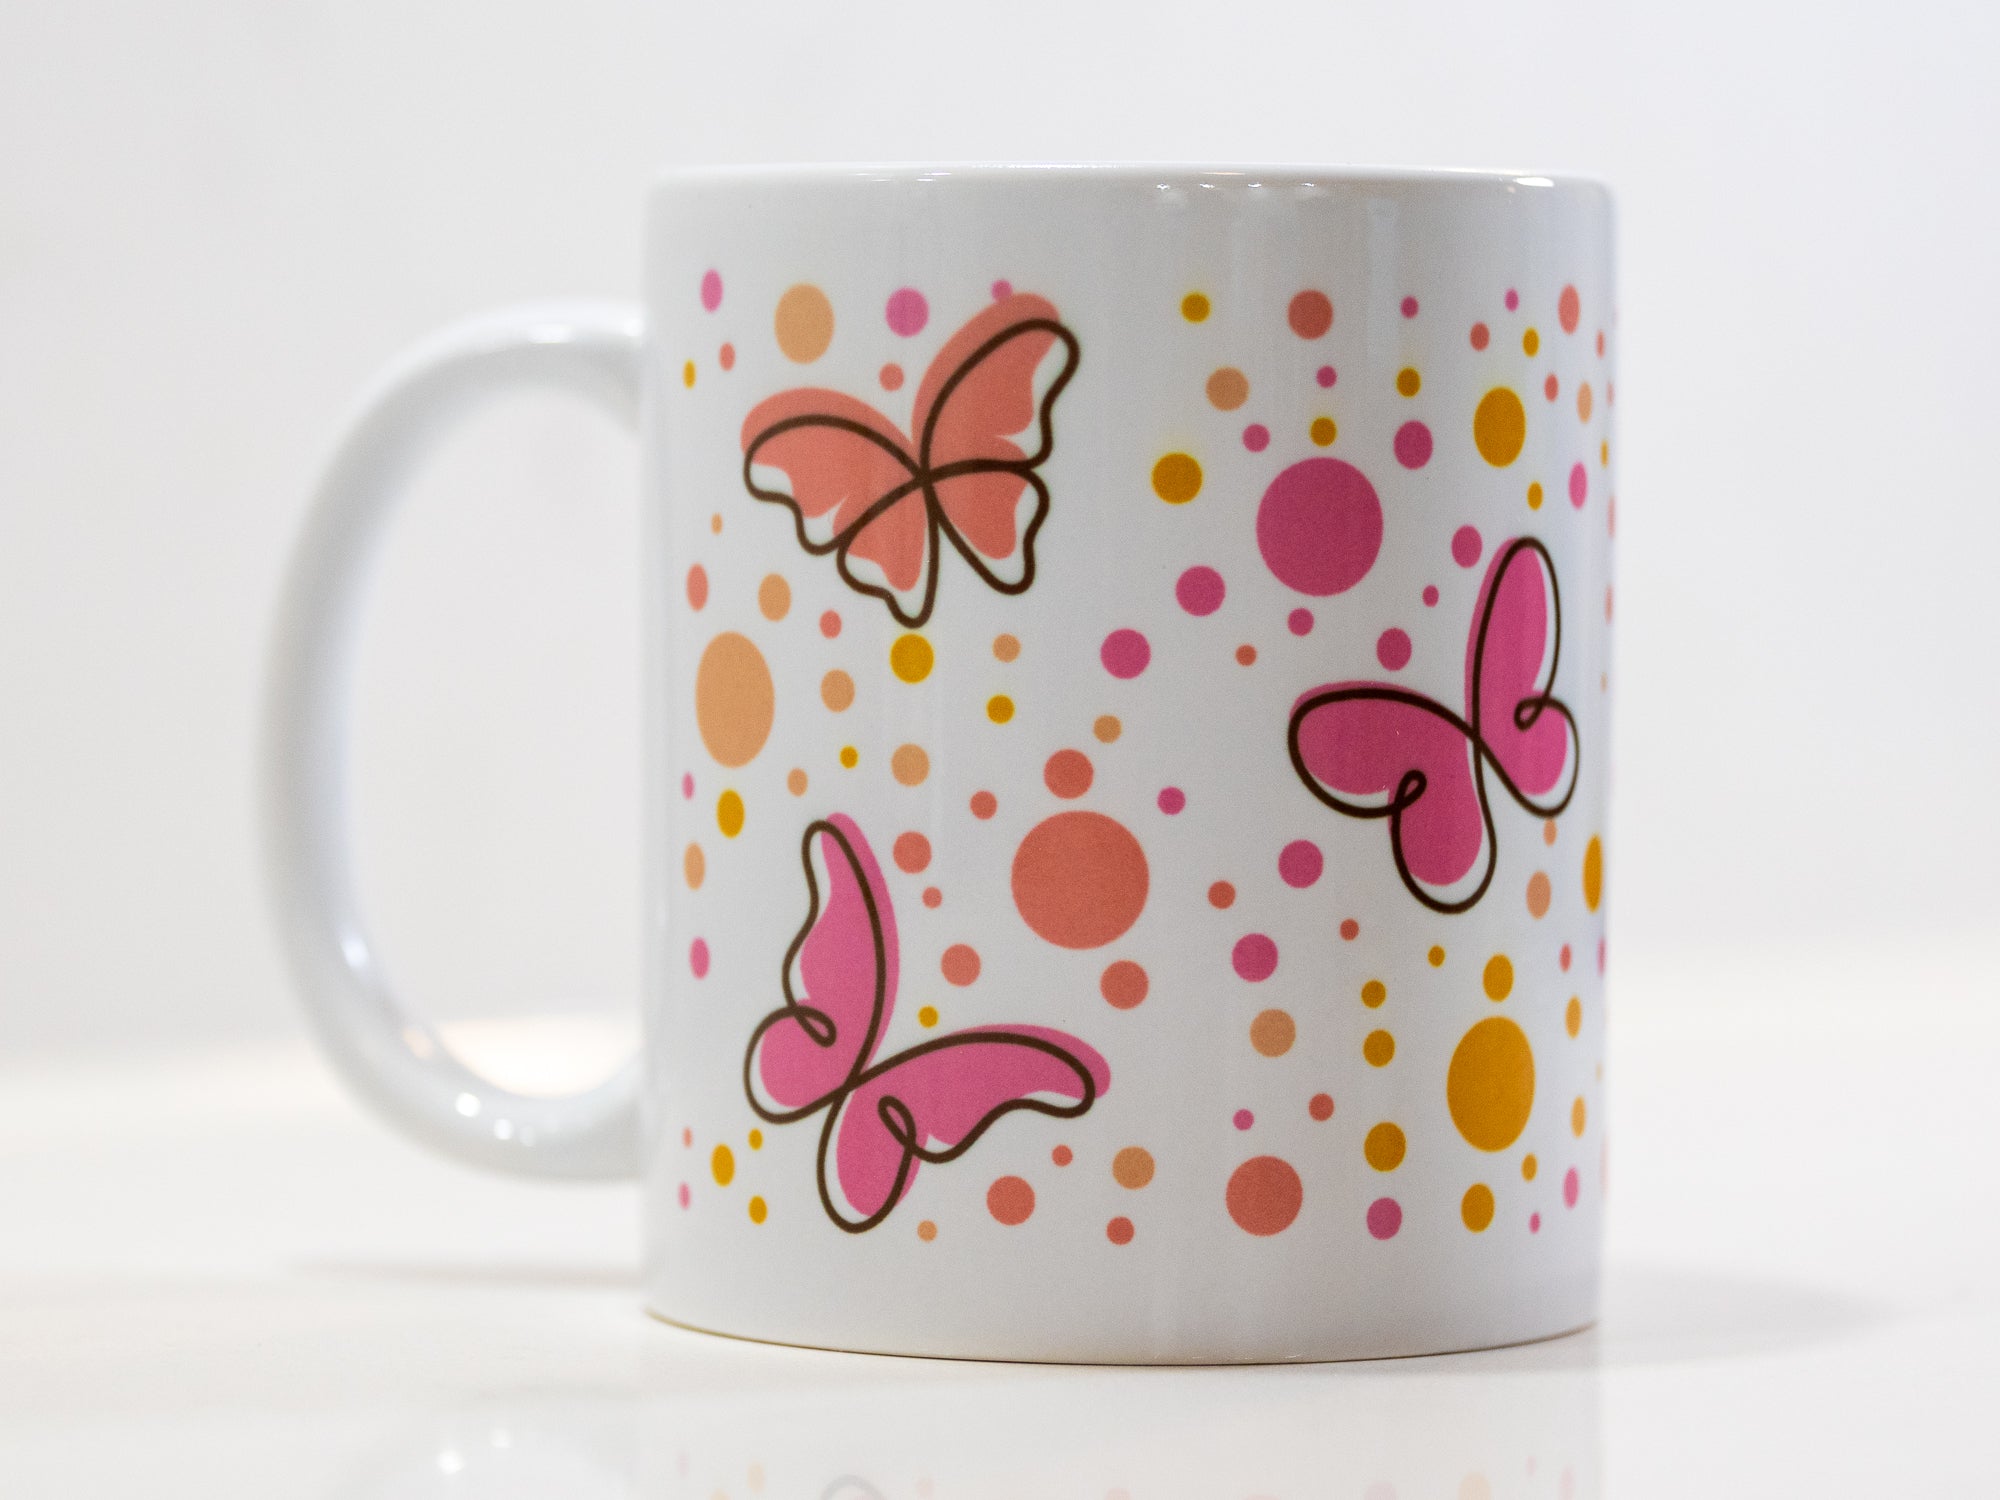 Finally Butterflies around - Mug